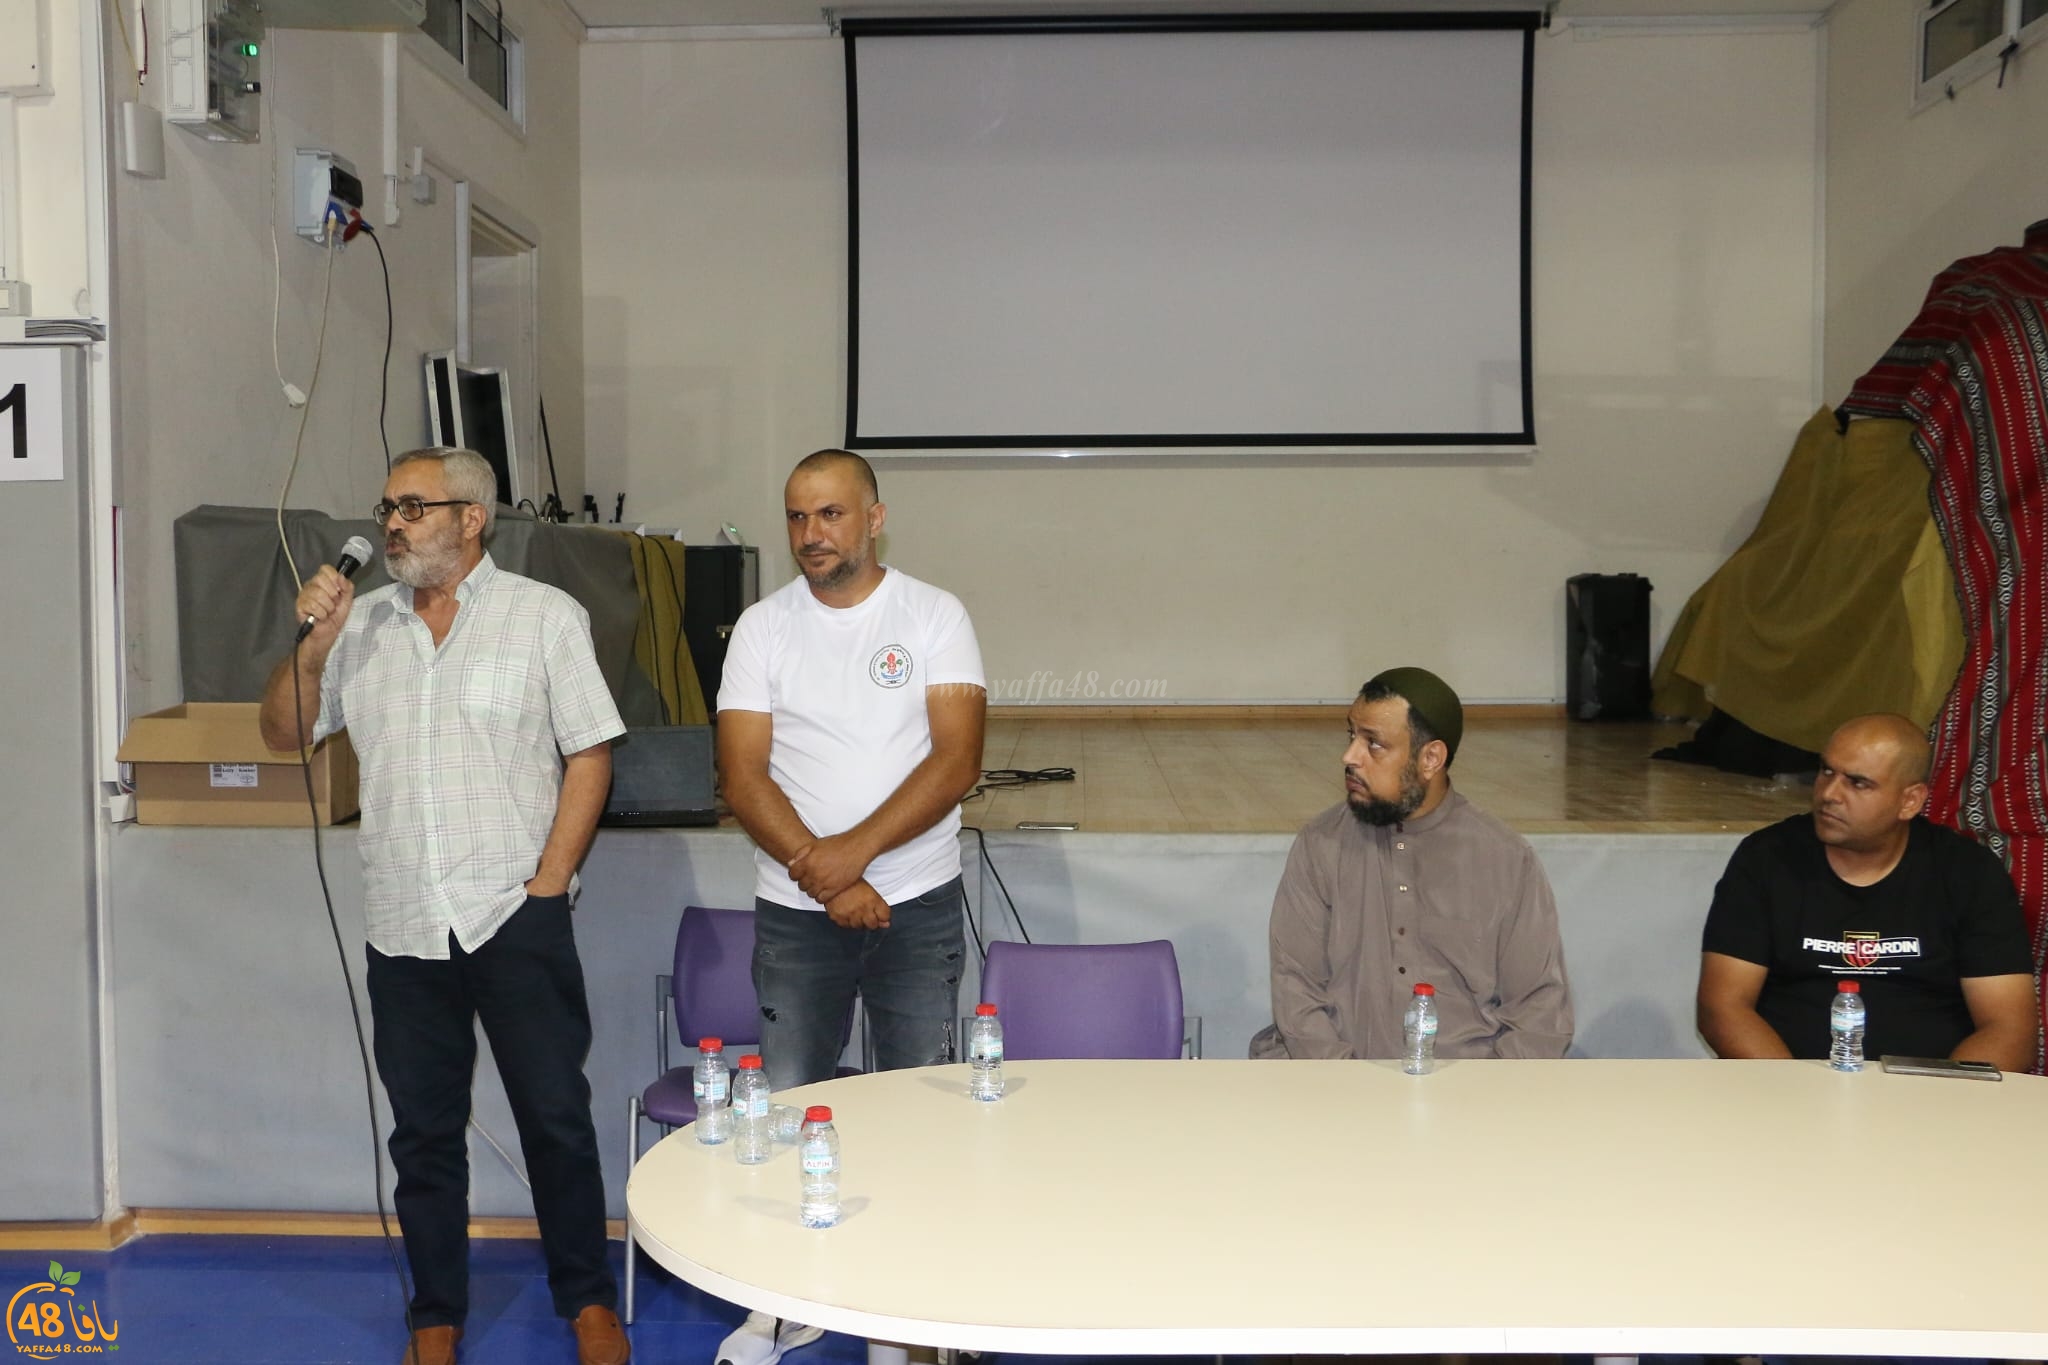  لجنة أولياء الأمور في مدرسة يافا الشاملة تعقد اجتماعاً بحضور الأهالي